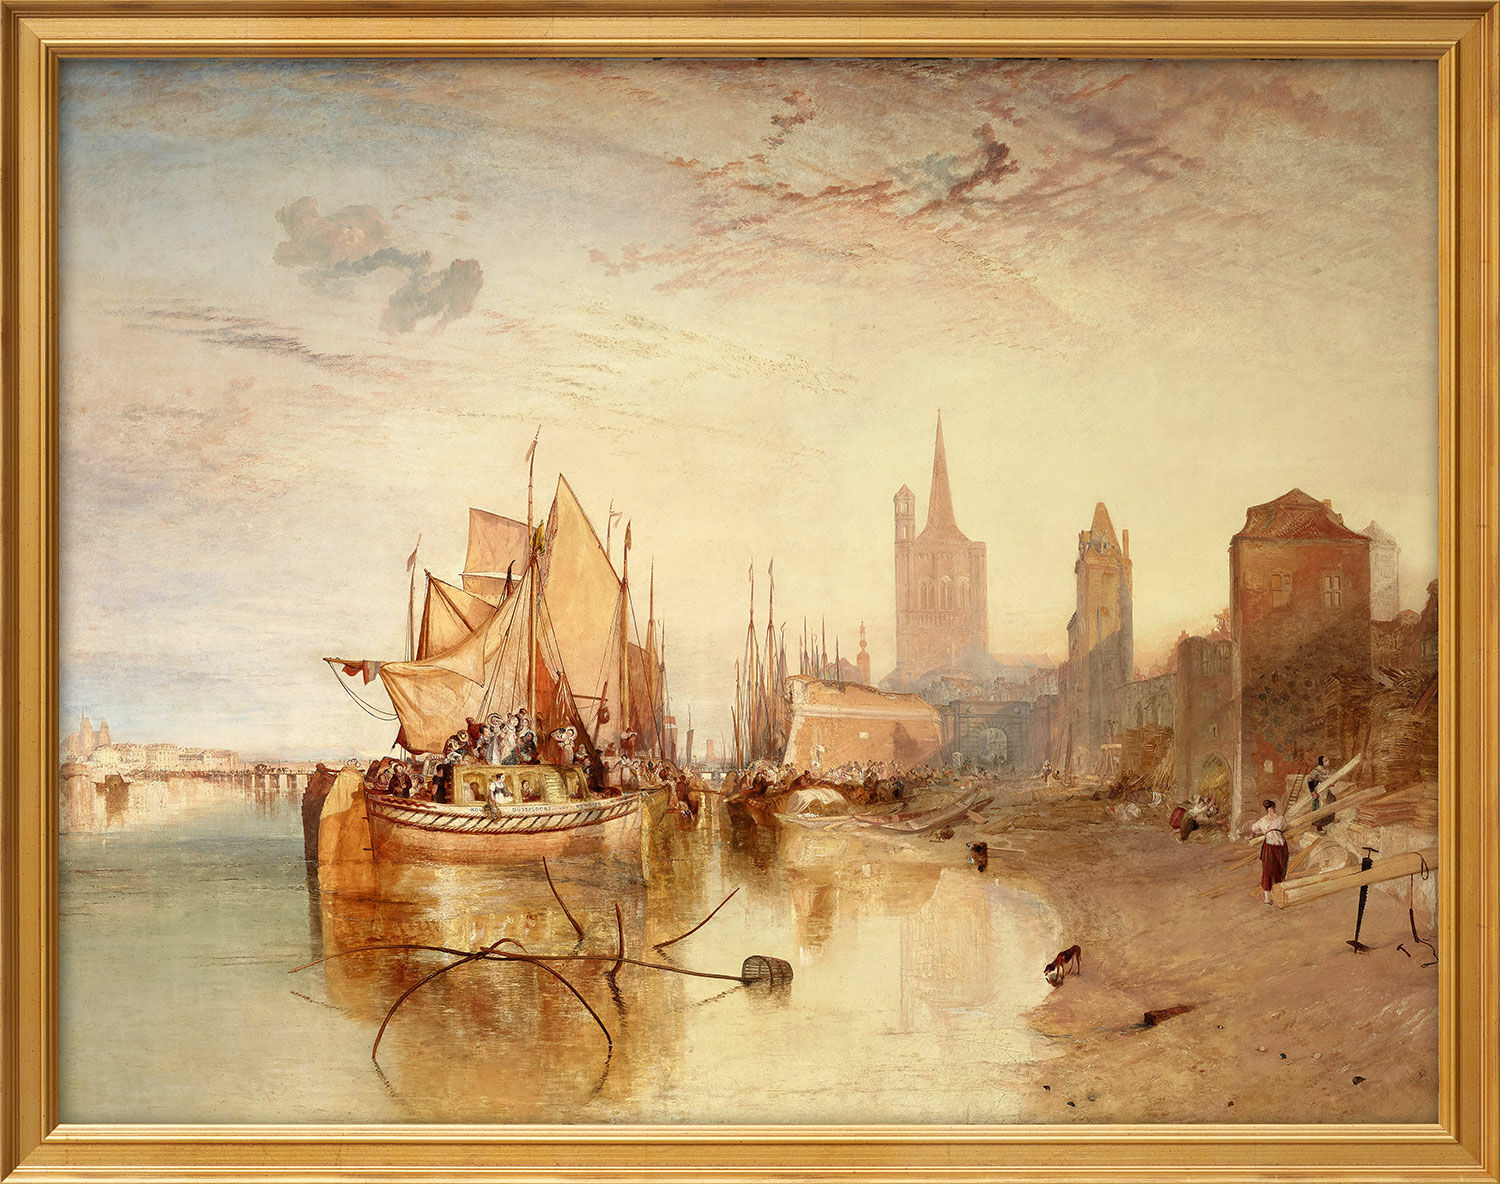 Tableau "Cologne, l'arrivée d'un bateau: Evening" (1826), encadré von William Turner